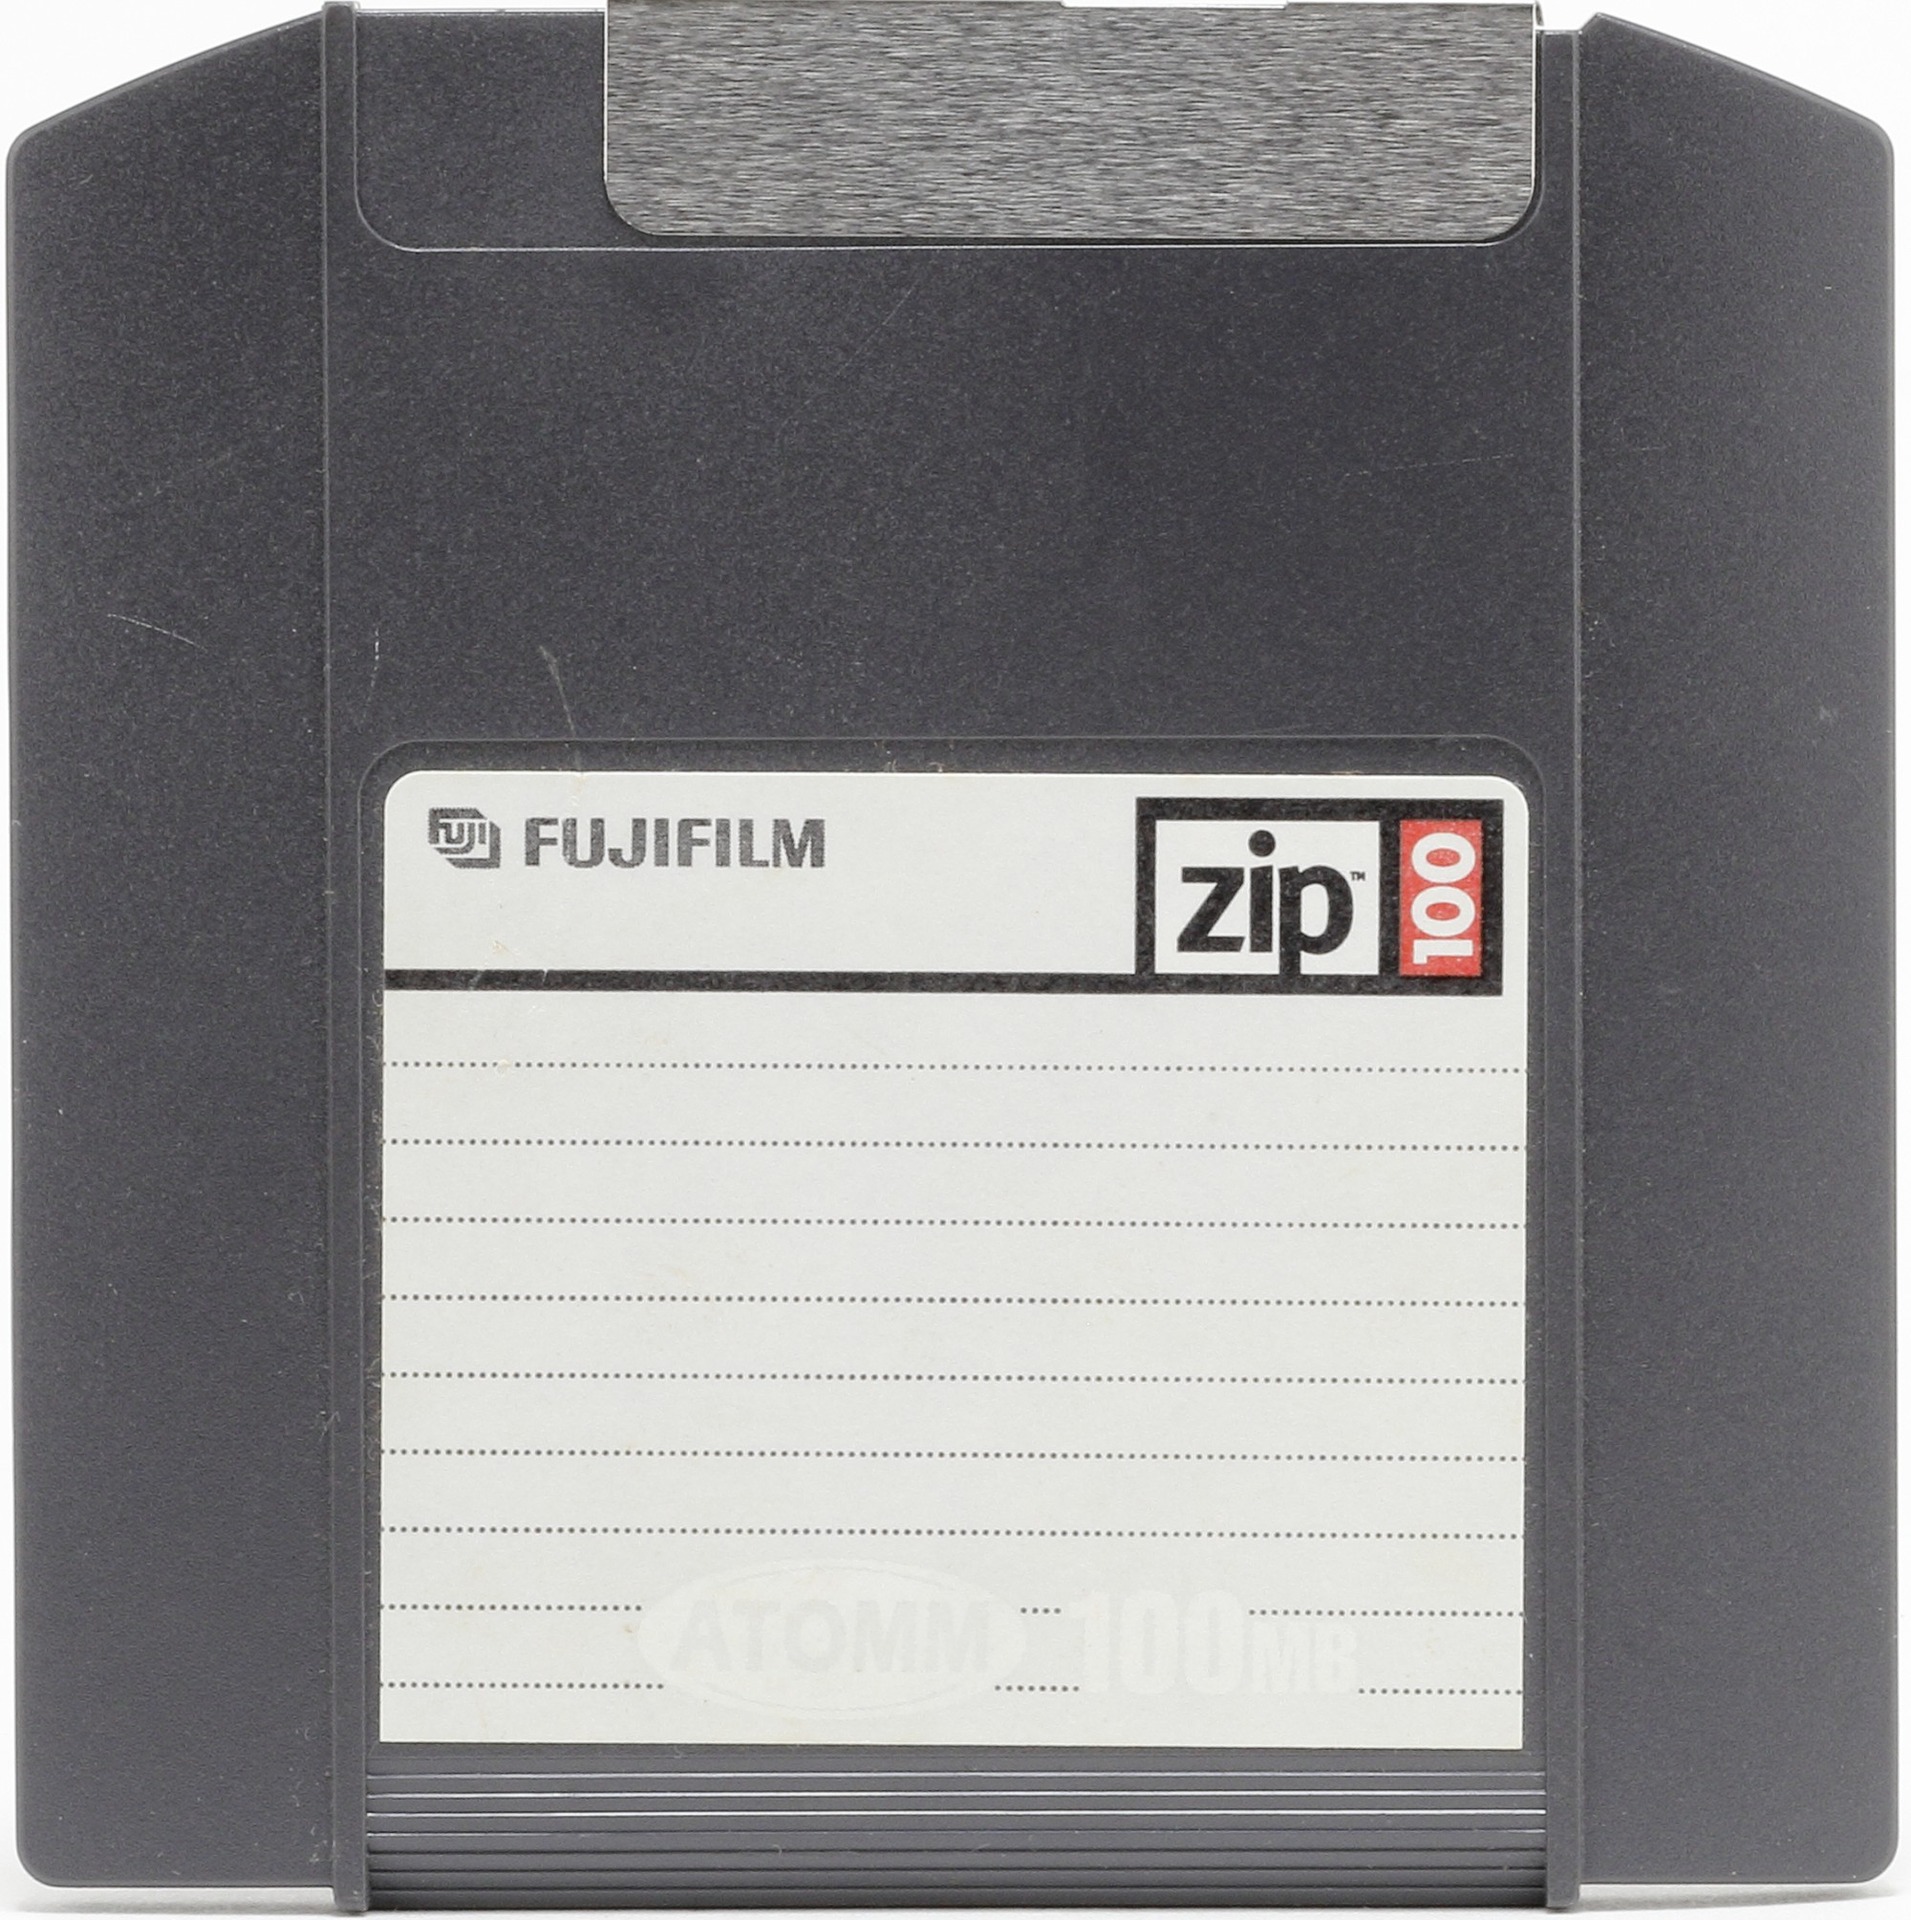 次世代フロッピーディスクとして有望視されていた「Zip」（100MB、1994